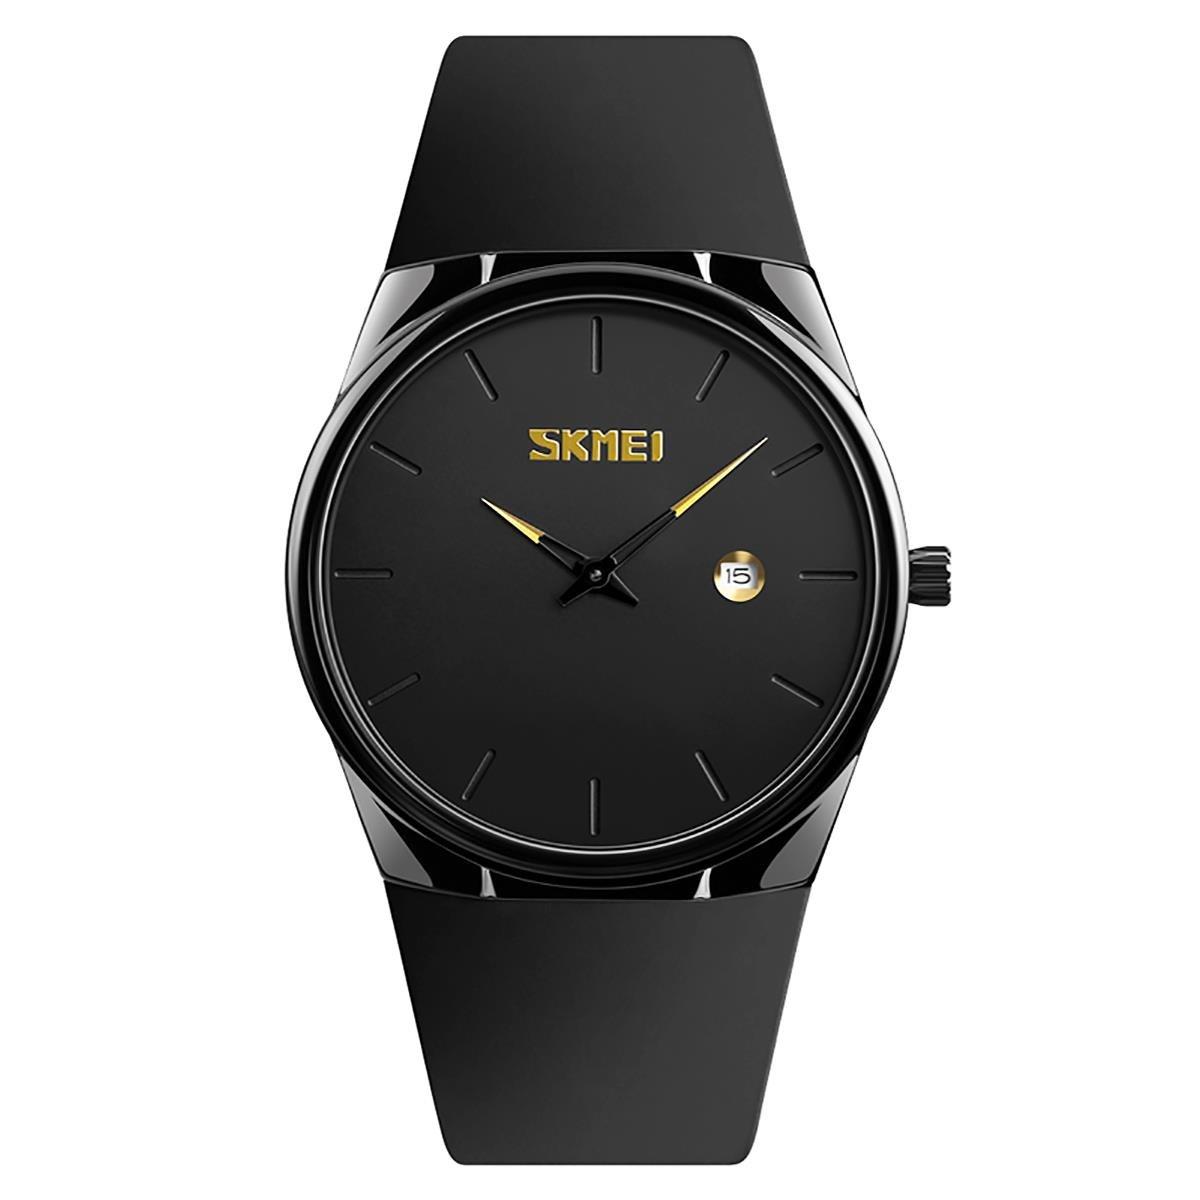 Классические и легкие женские часы с указателем даты Skmei, мультиколор цена и фото